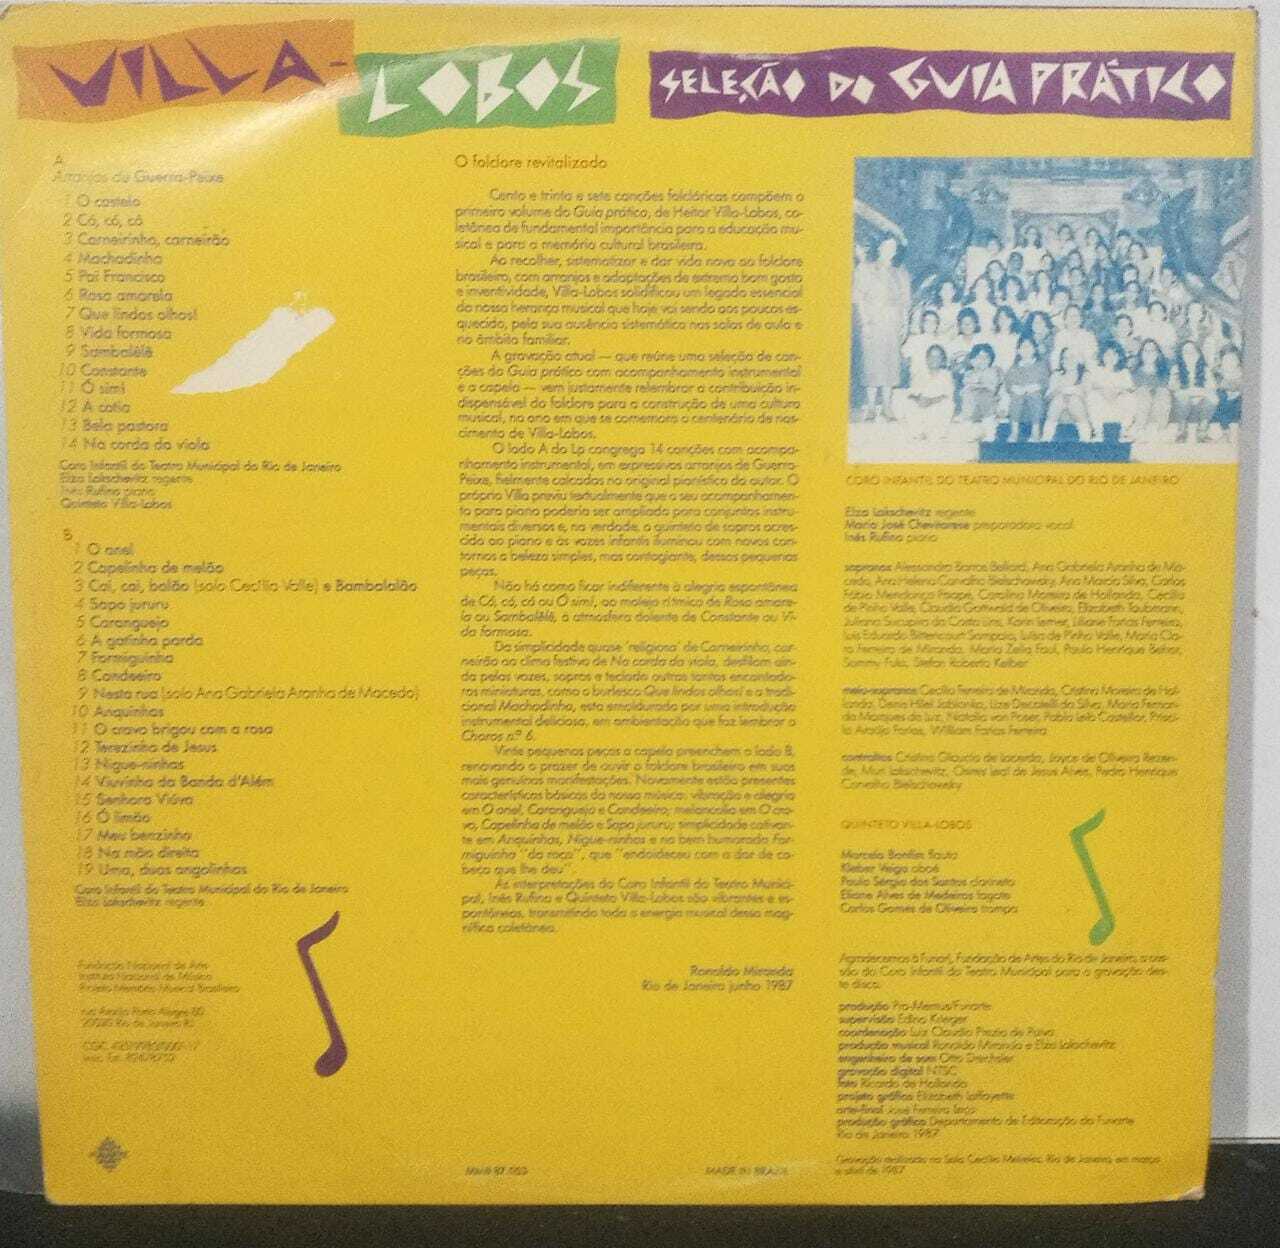 Vinil - Coro Infantil do Teatro Municipal do Rio de Janeiro Quinteto Villa-Lobos - Seleção do Guia pratico